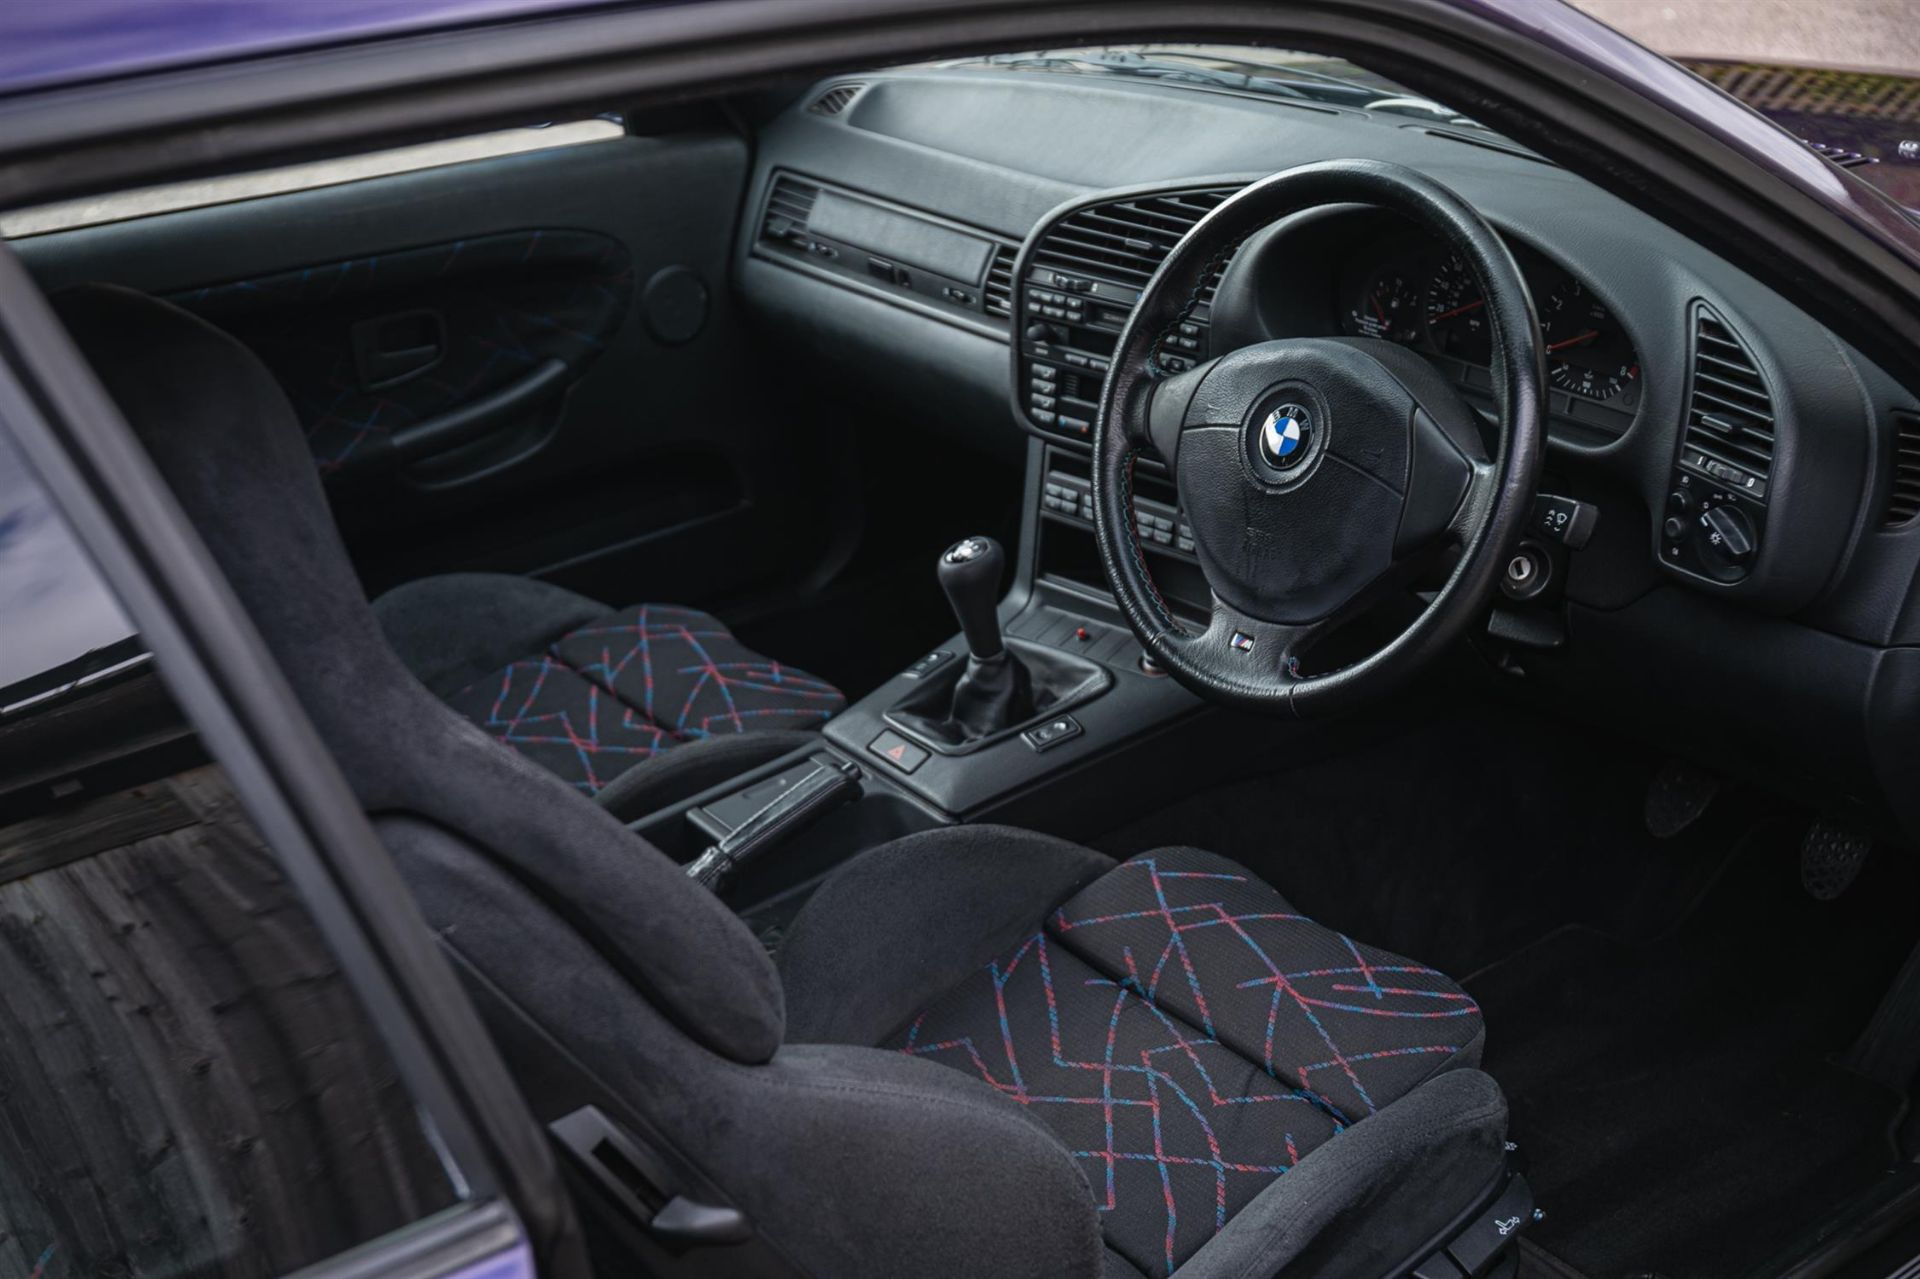 1998 BMW M3 Evolution (E36) Coupé - Image 2 of 10